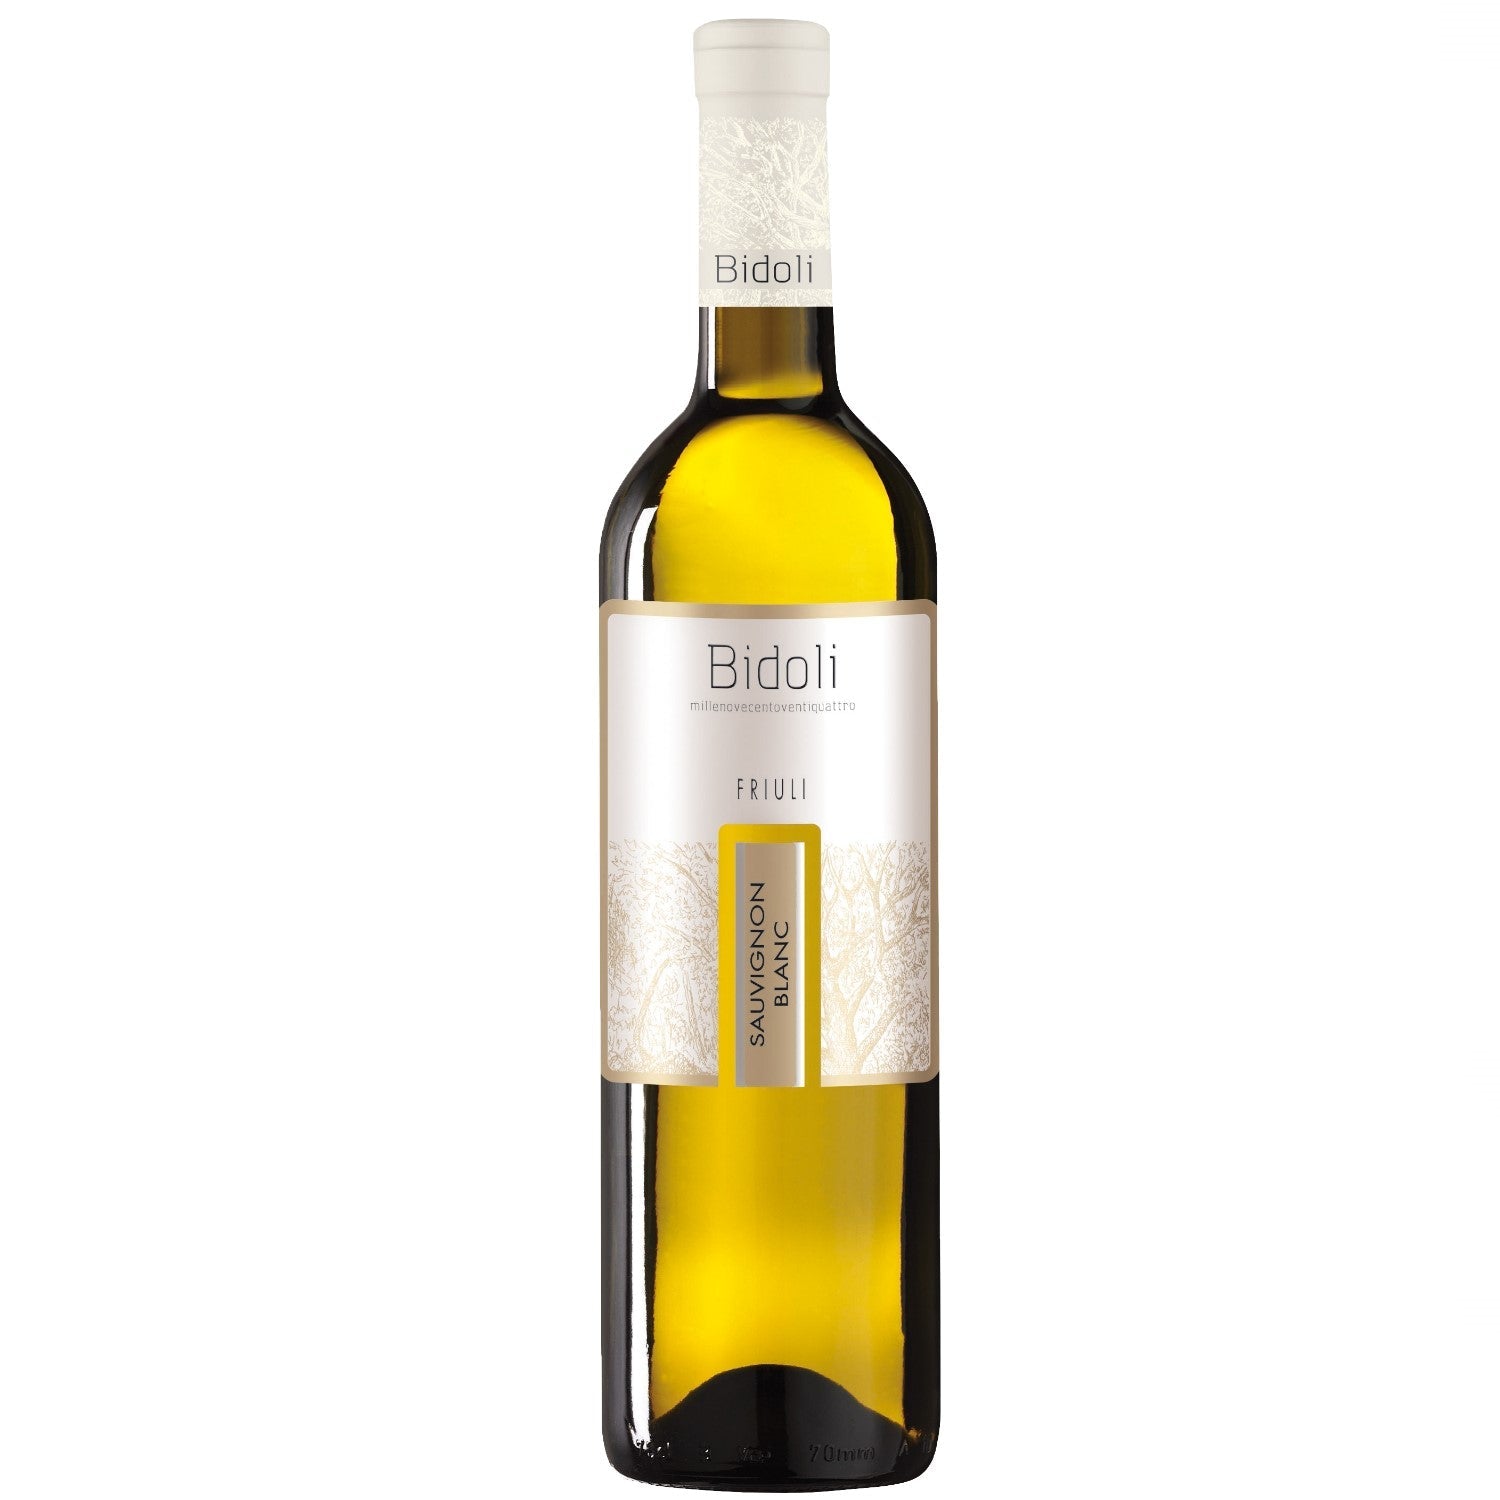 Bidoli Vini Sauvignon Blanc DOC Friuli Grave Weißwein Wein trocken Italien (12 x 0.75l) - Versanel -